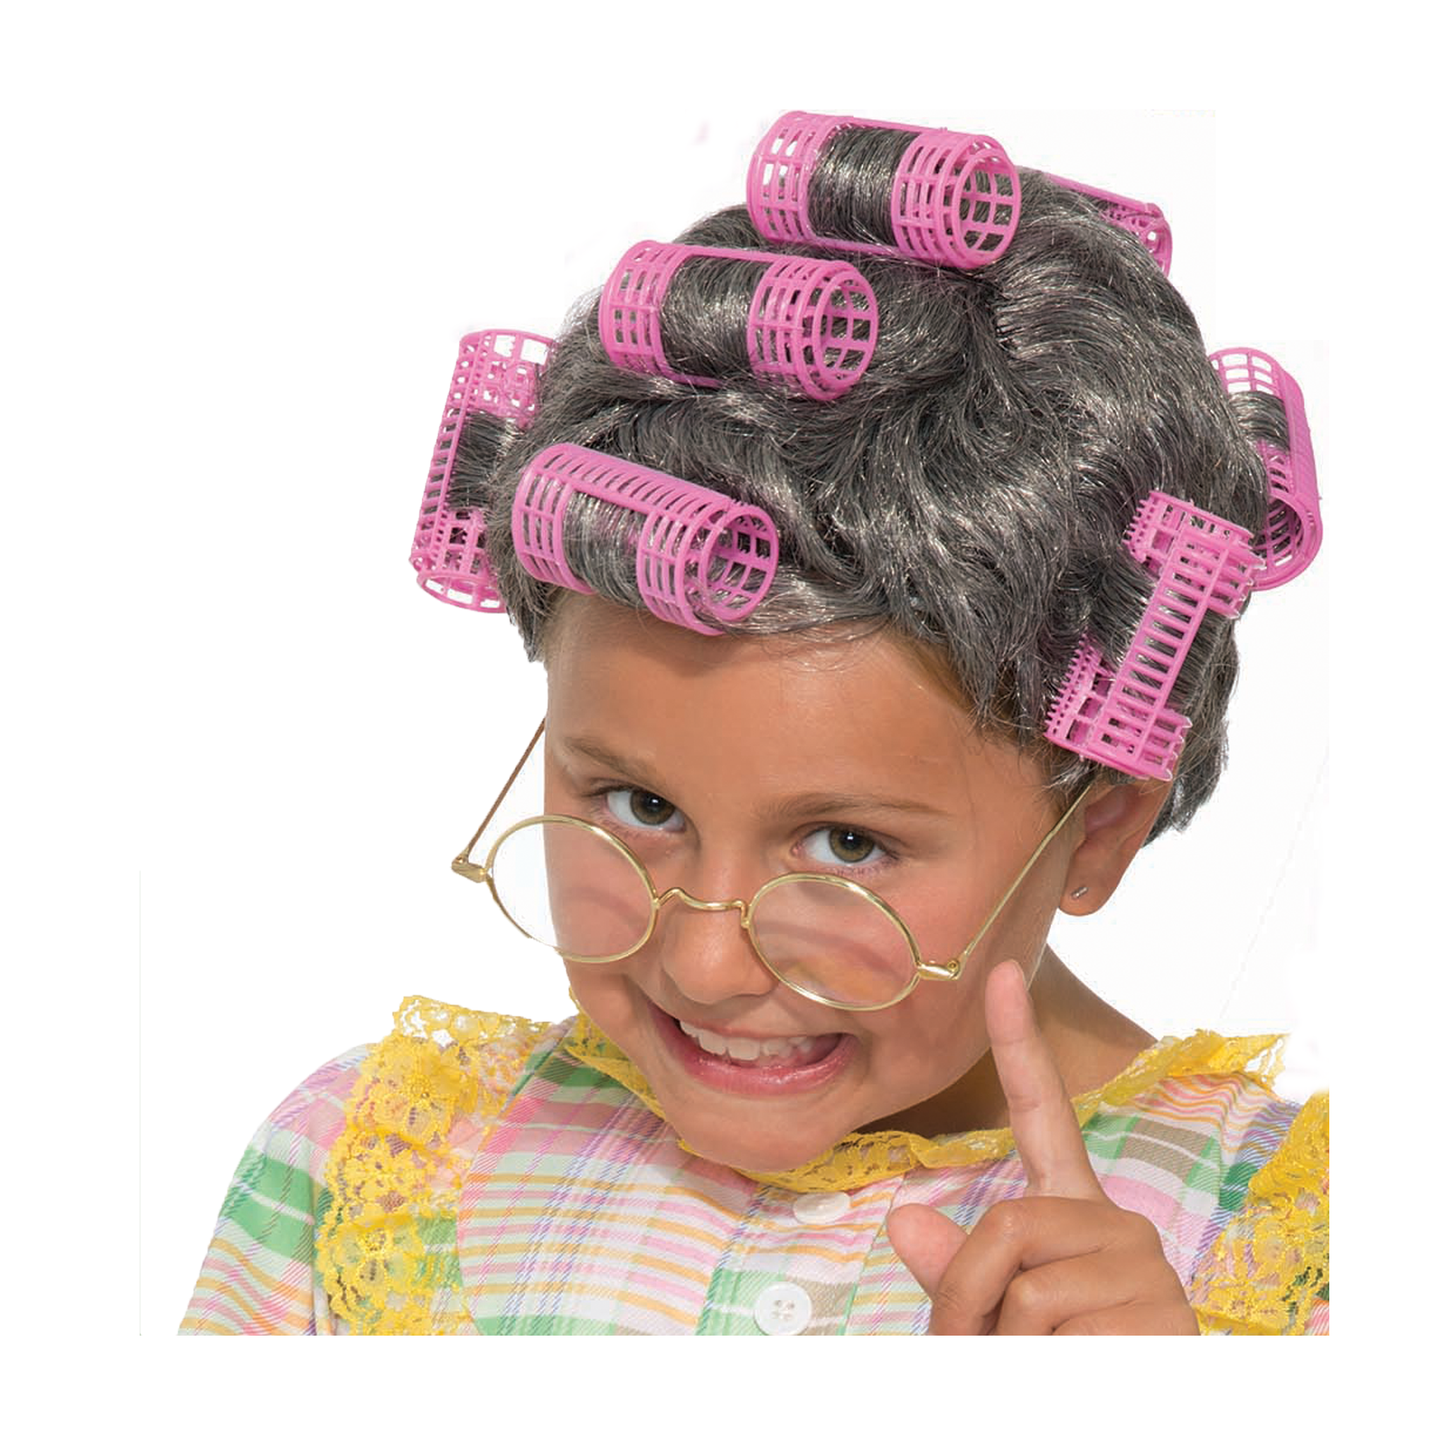 Children's 'Aunt Gertie' Curler Wig